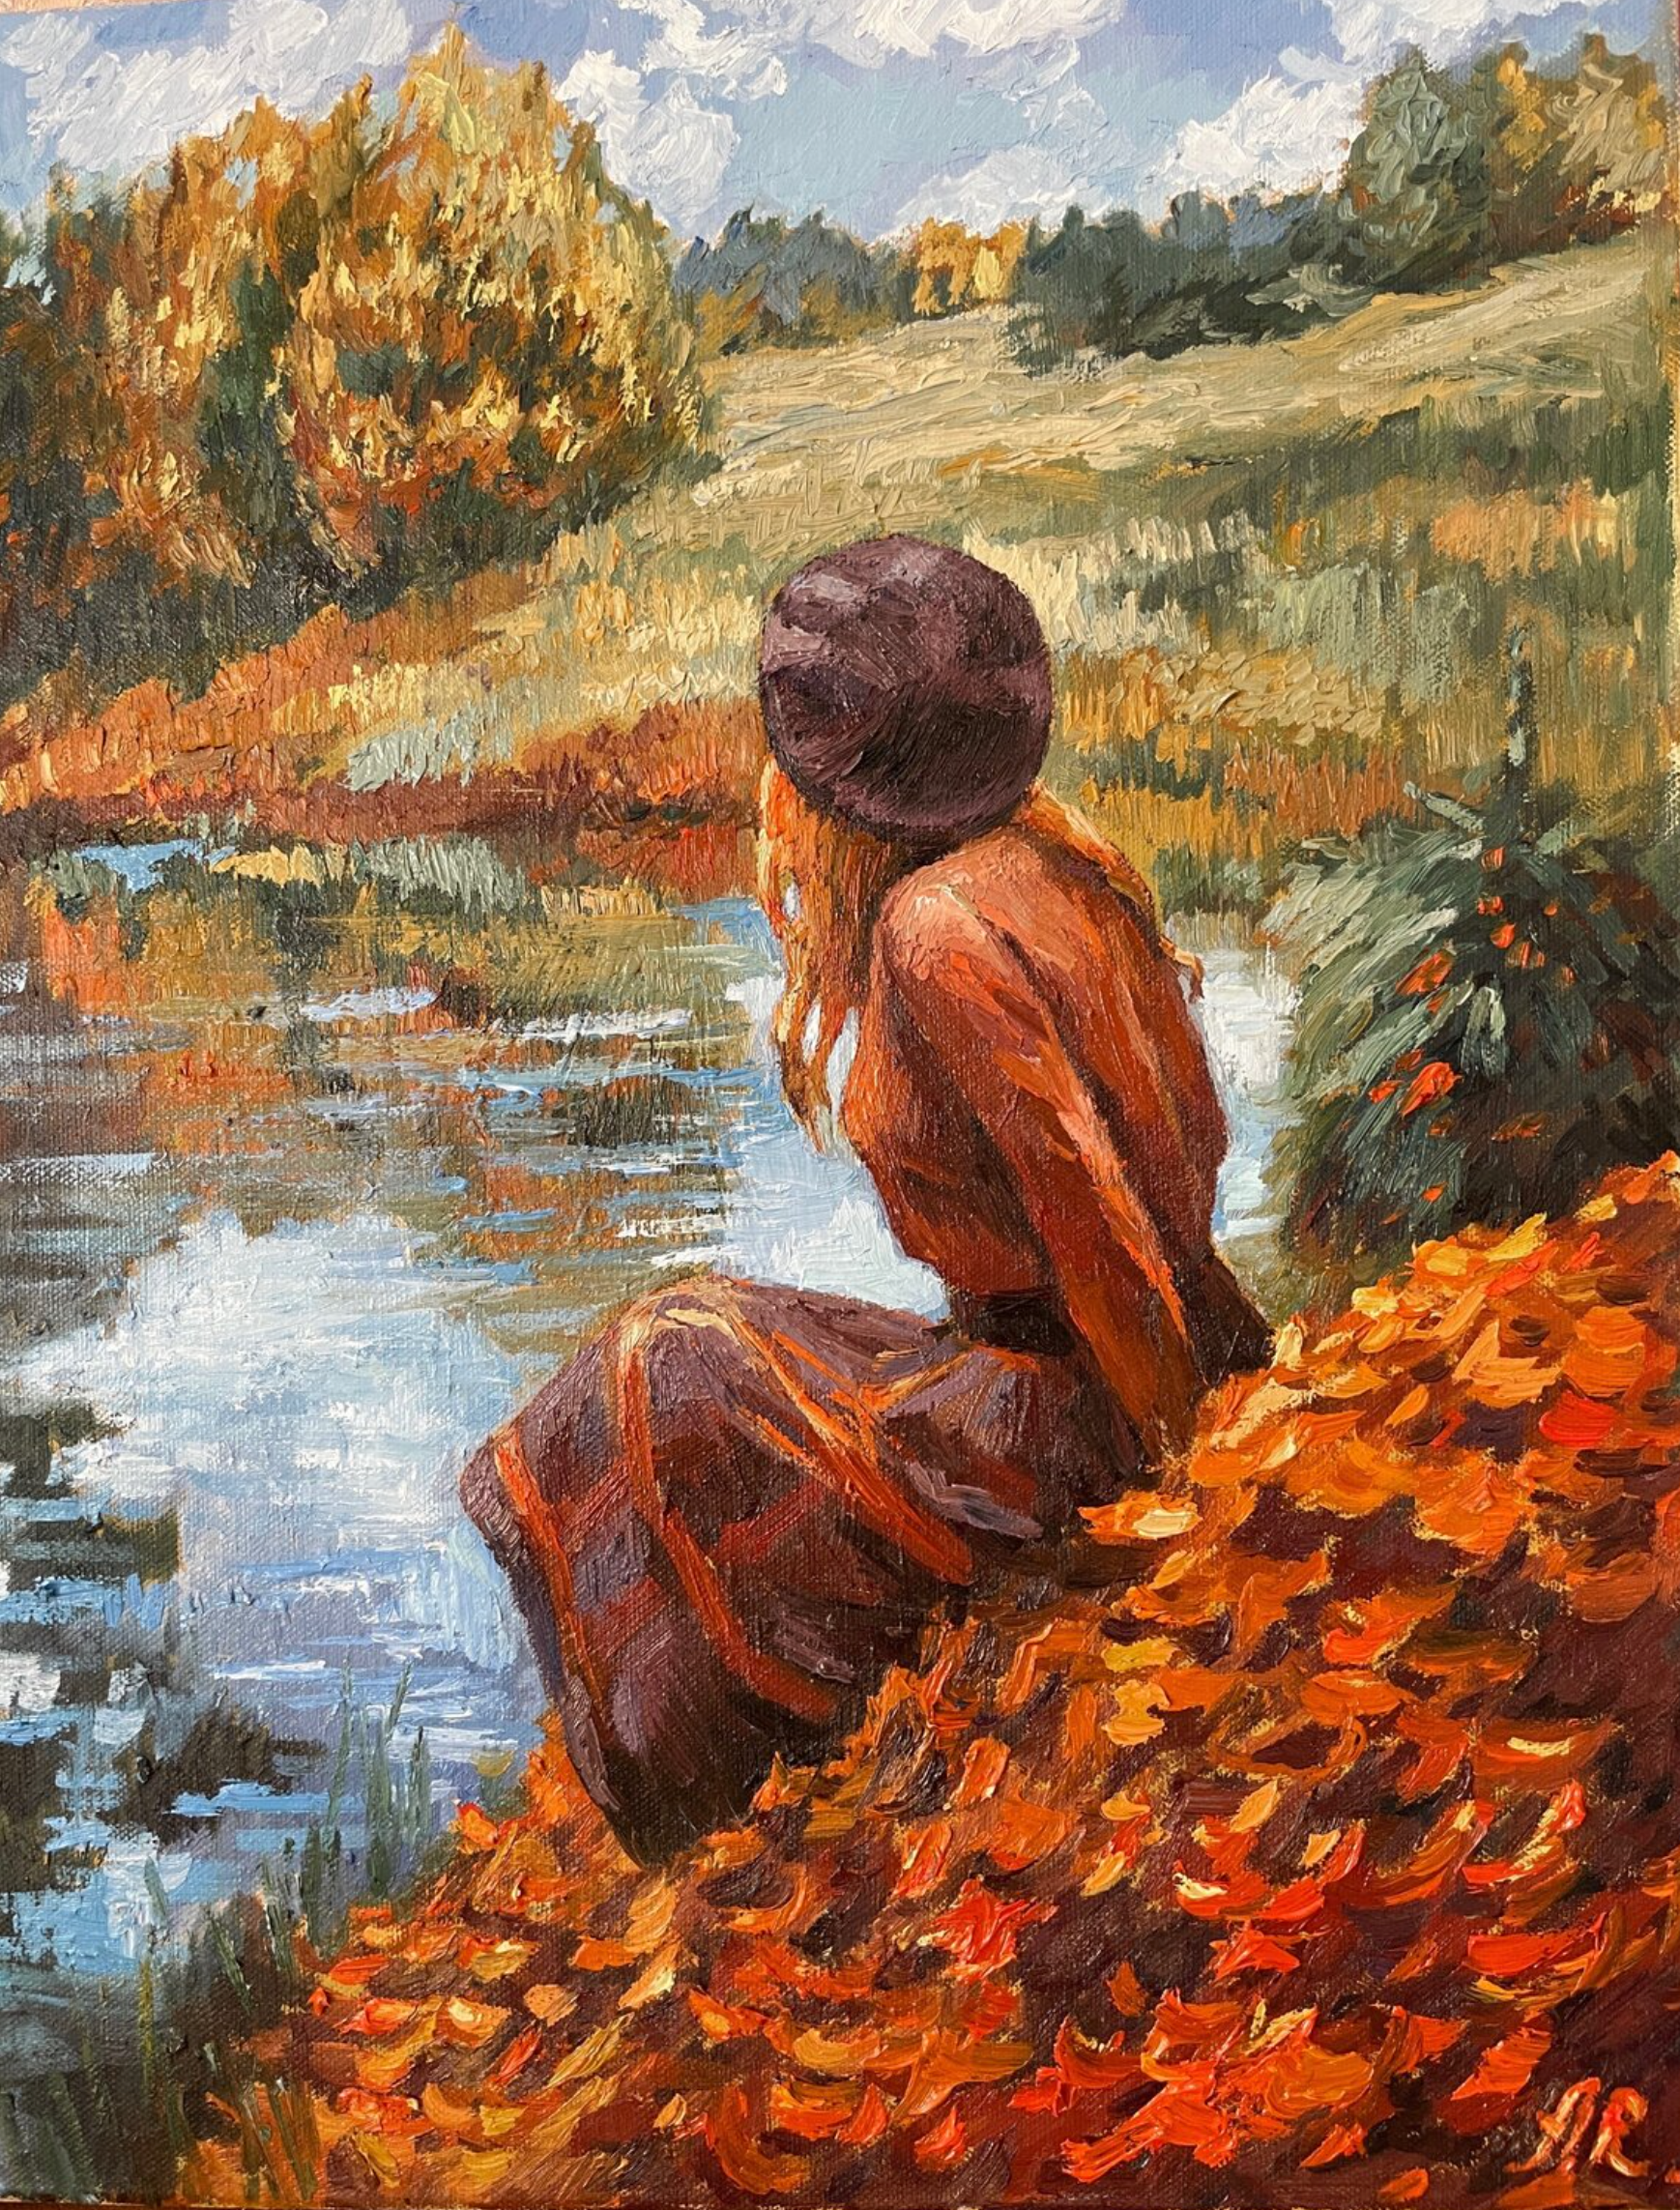 安娜-雷兹尼科娃的 "秋天的童话 "画作展示了一幅美妙的秋景。一个年轻女子坐在湖边的草地上，呈现出美妙的秋色，棕色、黄色、红色。用毛笔画在棉布上。